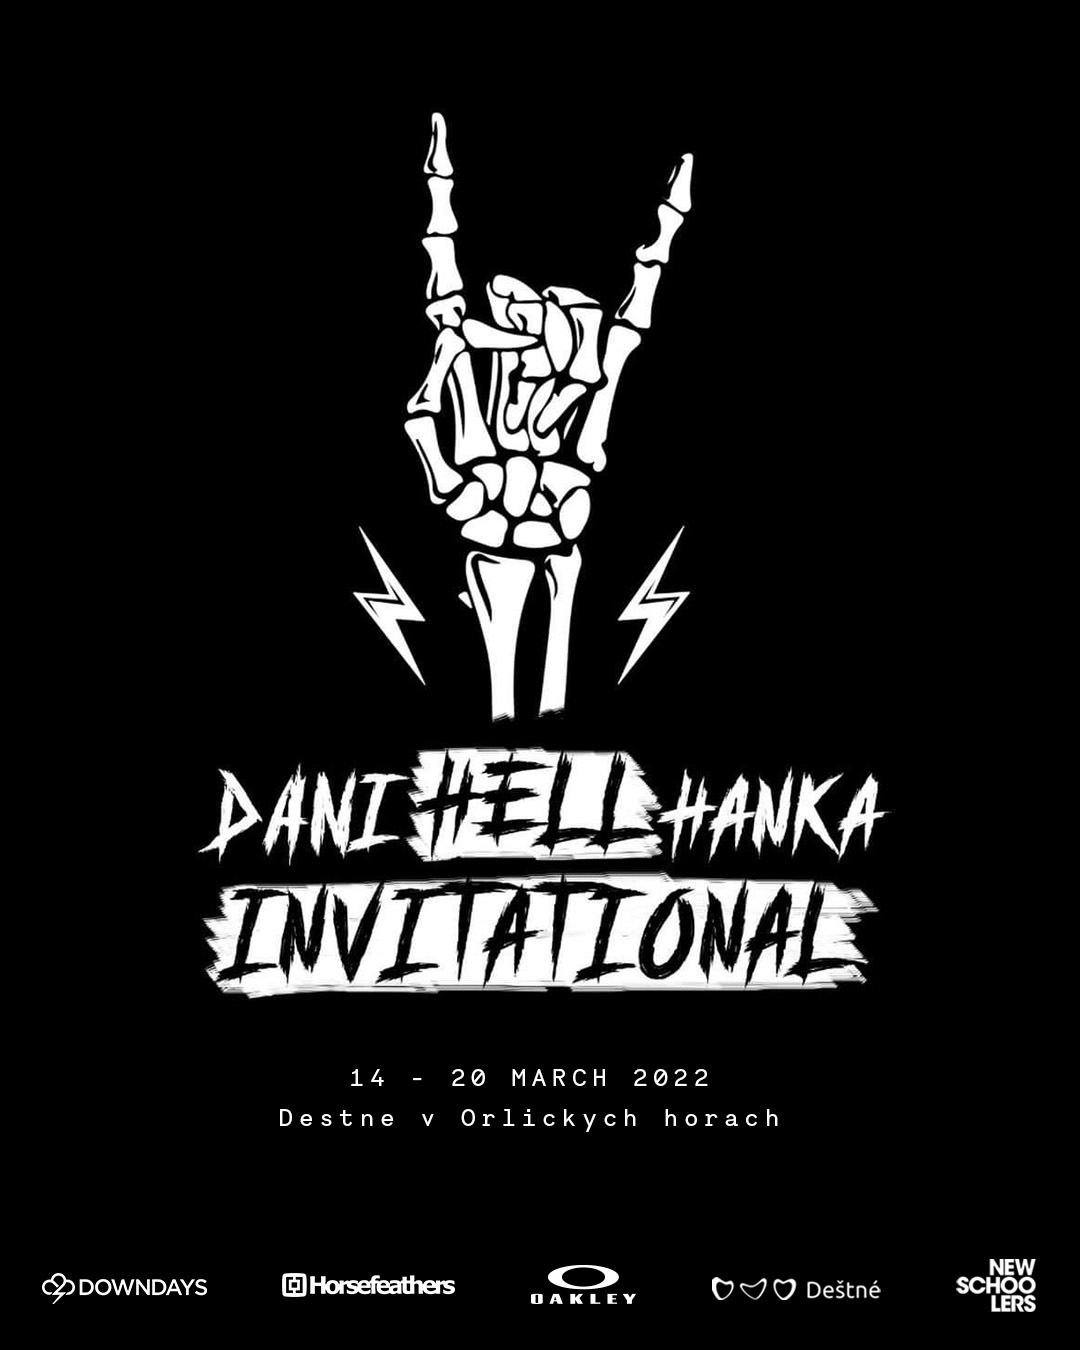 Danihell Hanka Invitational